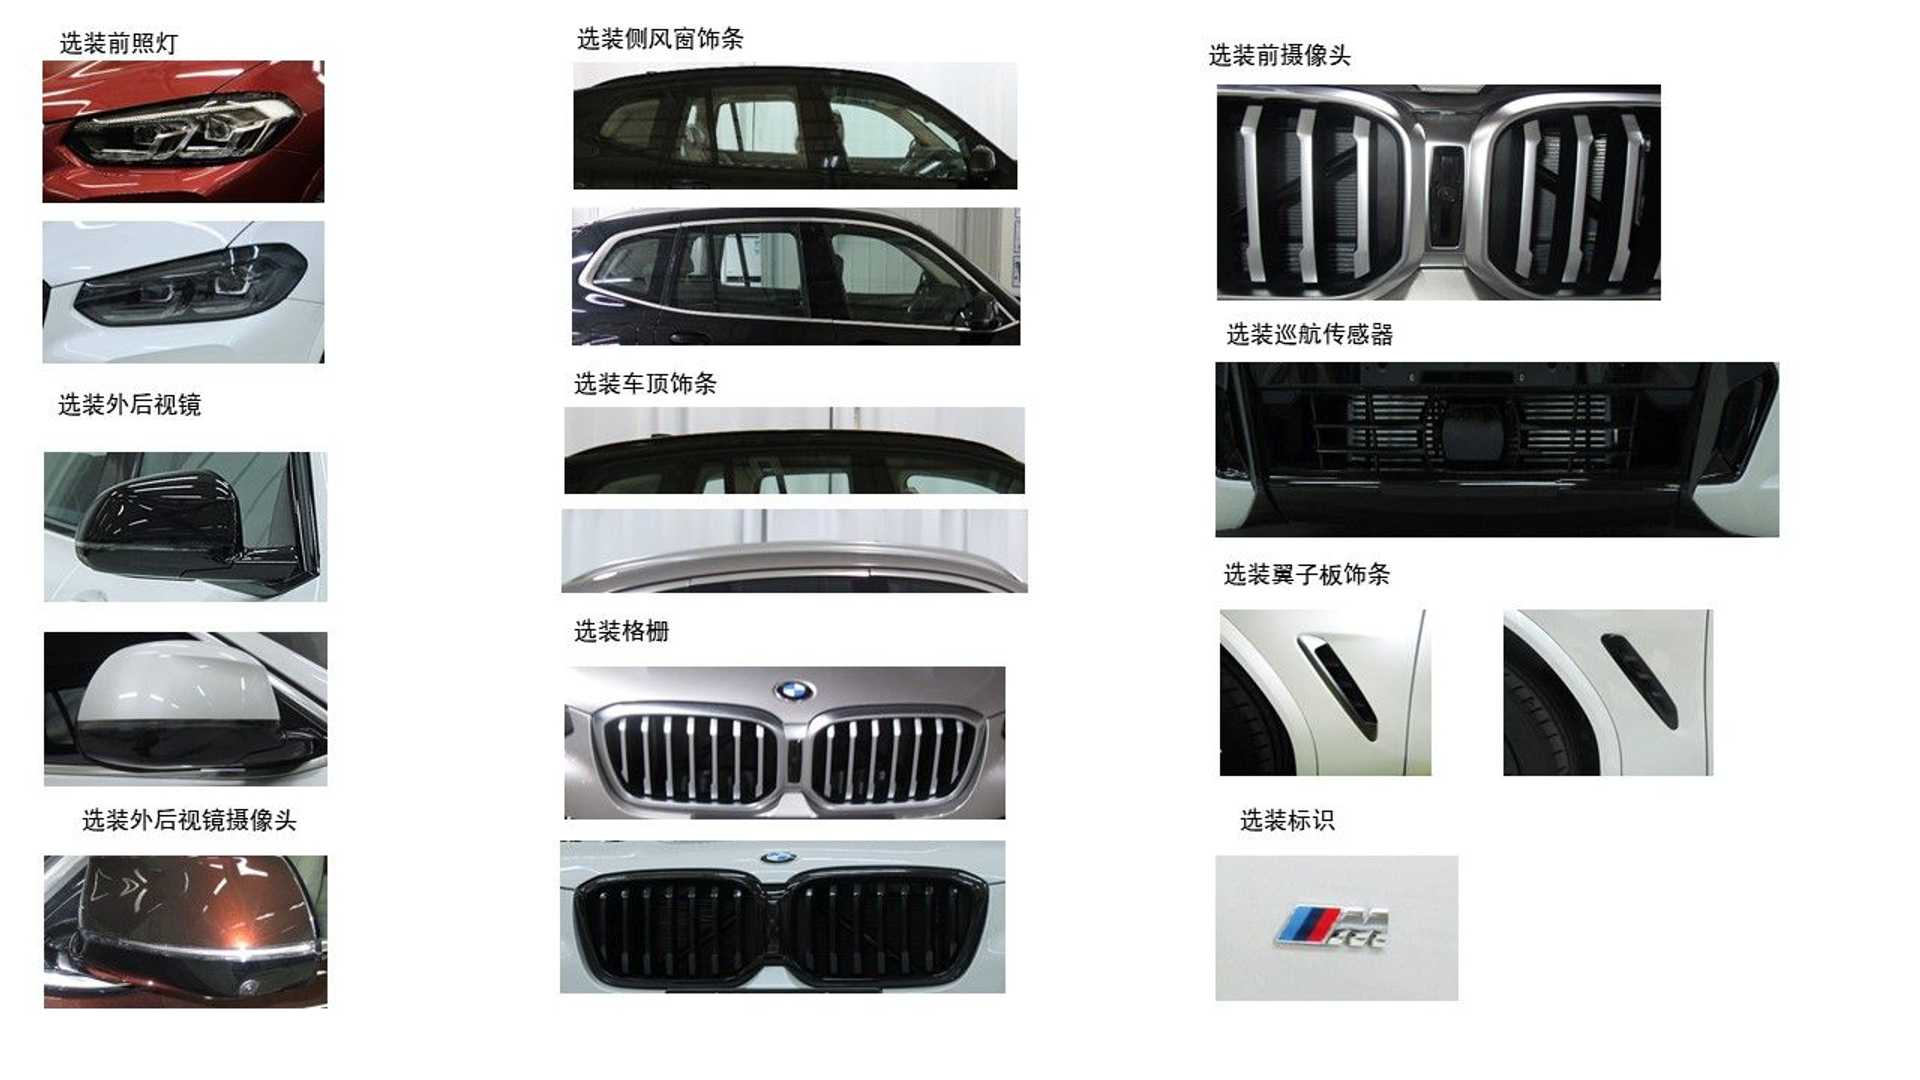 Lộ diện BMW X3 2021: Đèn sắc sảo hơn, chưa có lỗ mũi khổng lồ như X7, hứa hẹn về Việt Nam đấu Mercedes-Benz GLC - Ảnh 5.